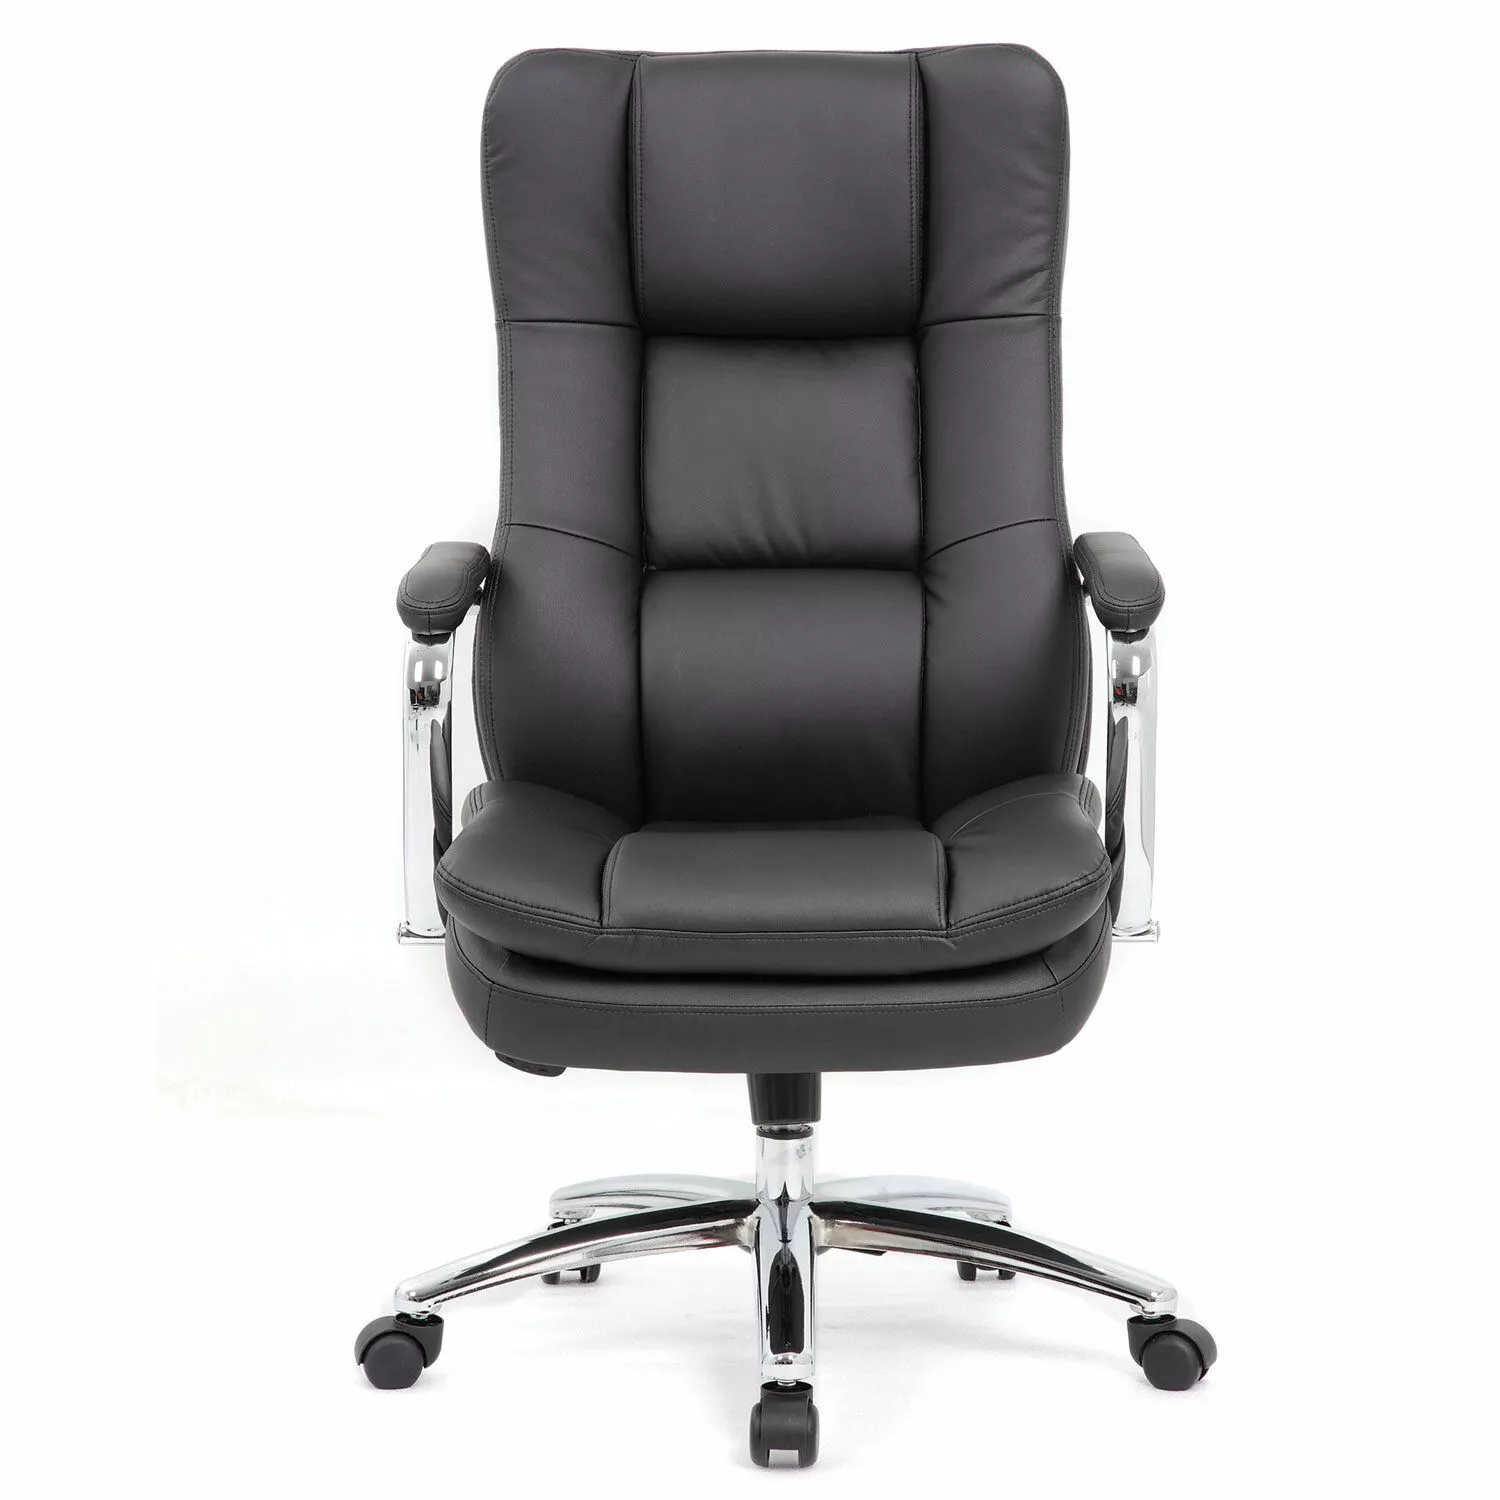 Кресло руководителя BRABIX PREMIUM Amadeus EX-507 Черный 530879